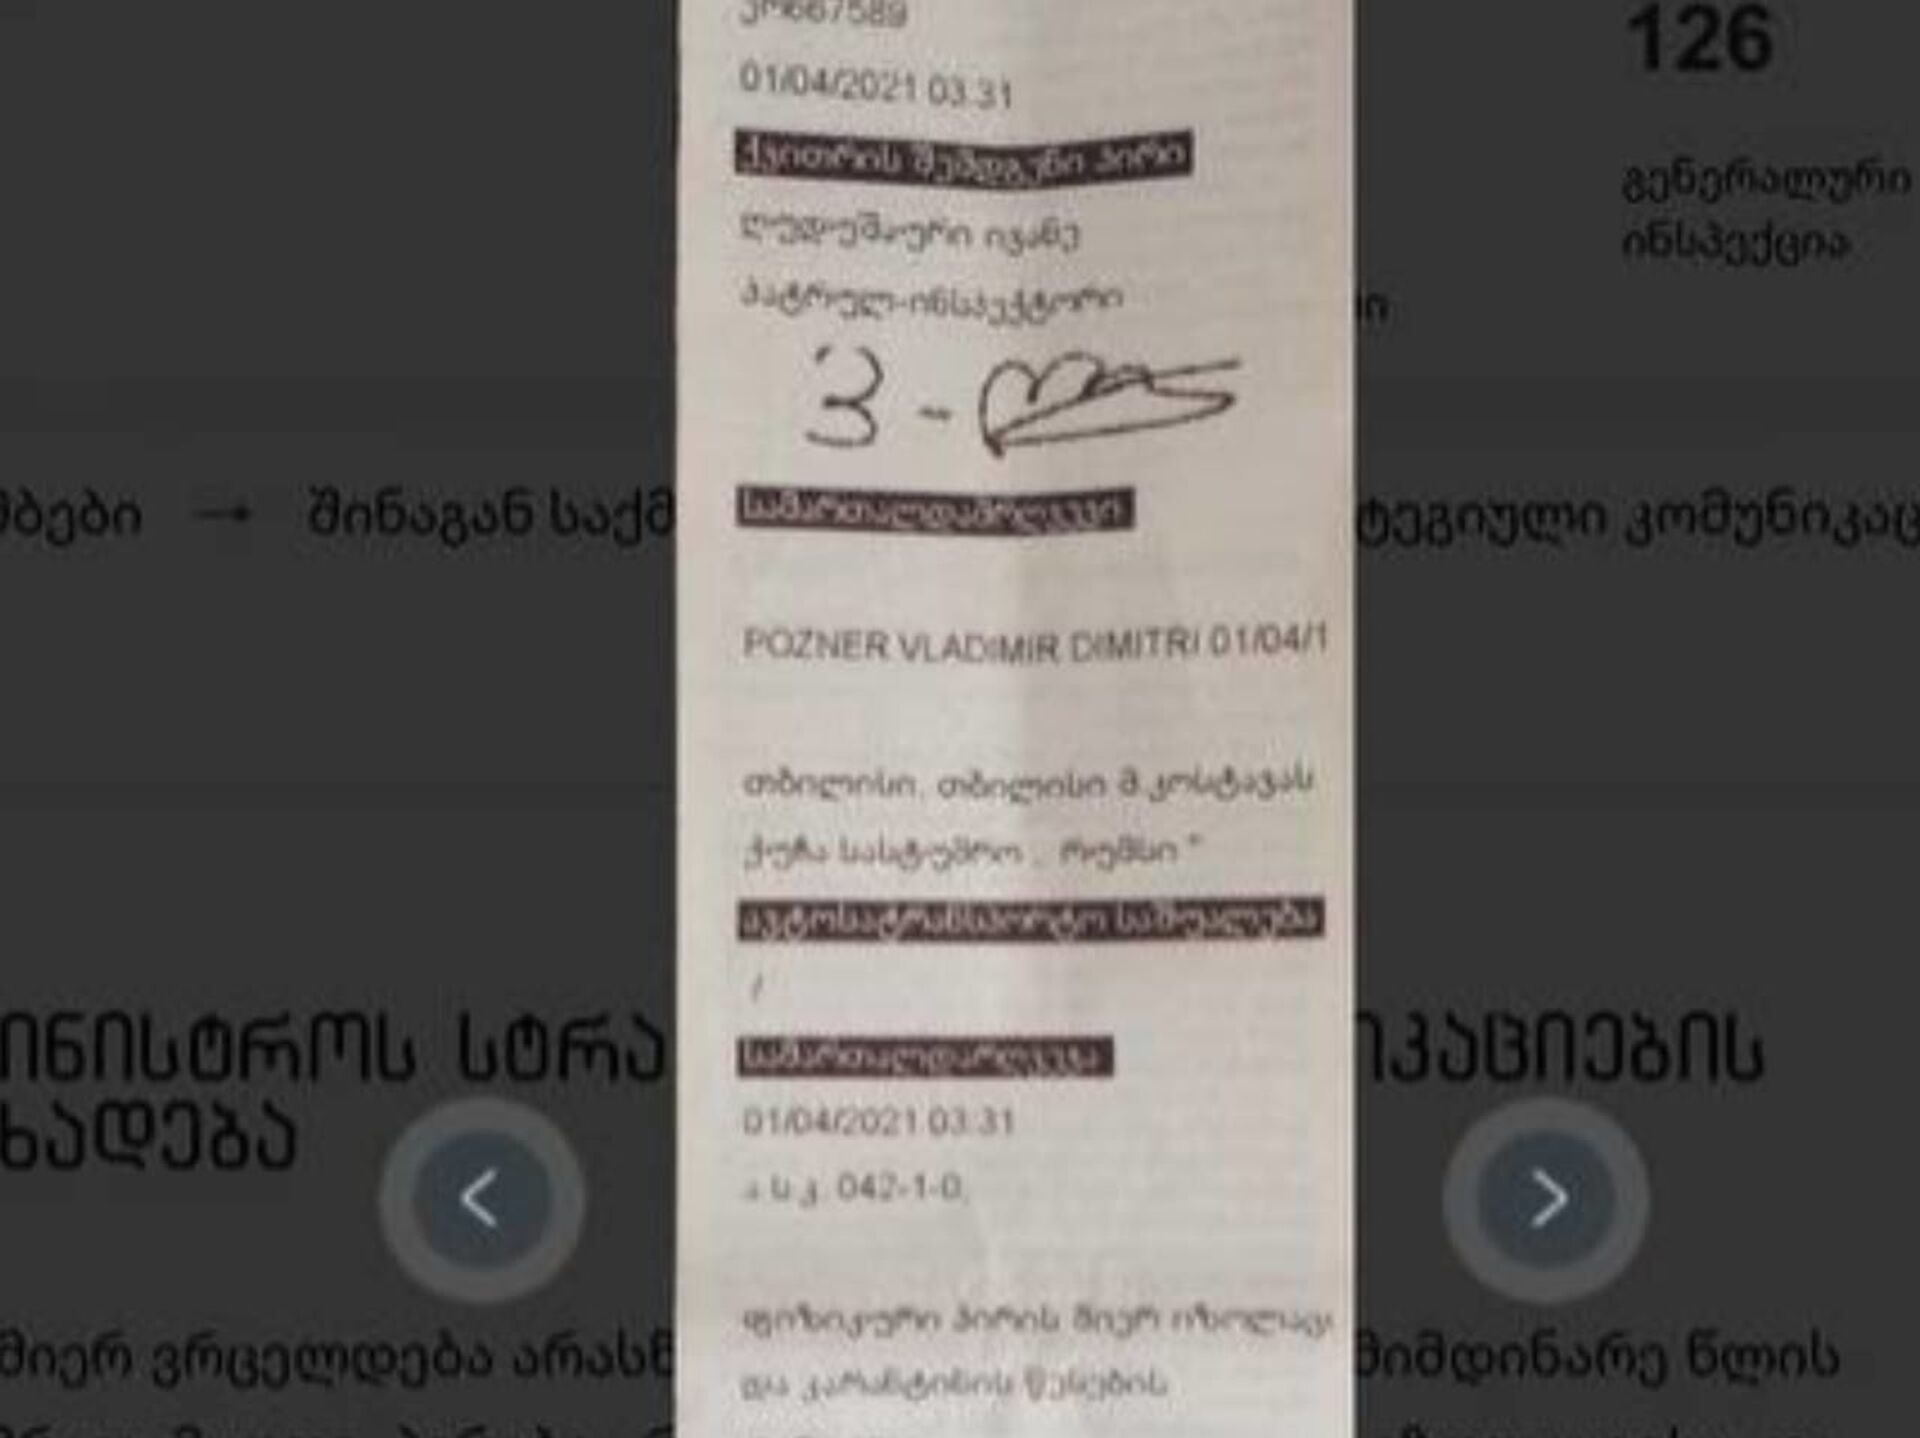 МВД Грузии публикует квитанции штрафов, выписанных Познеру и его гостям - Sputnik Грузия, 1920, 01.04.2021